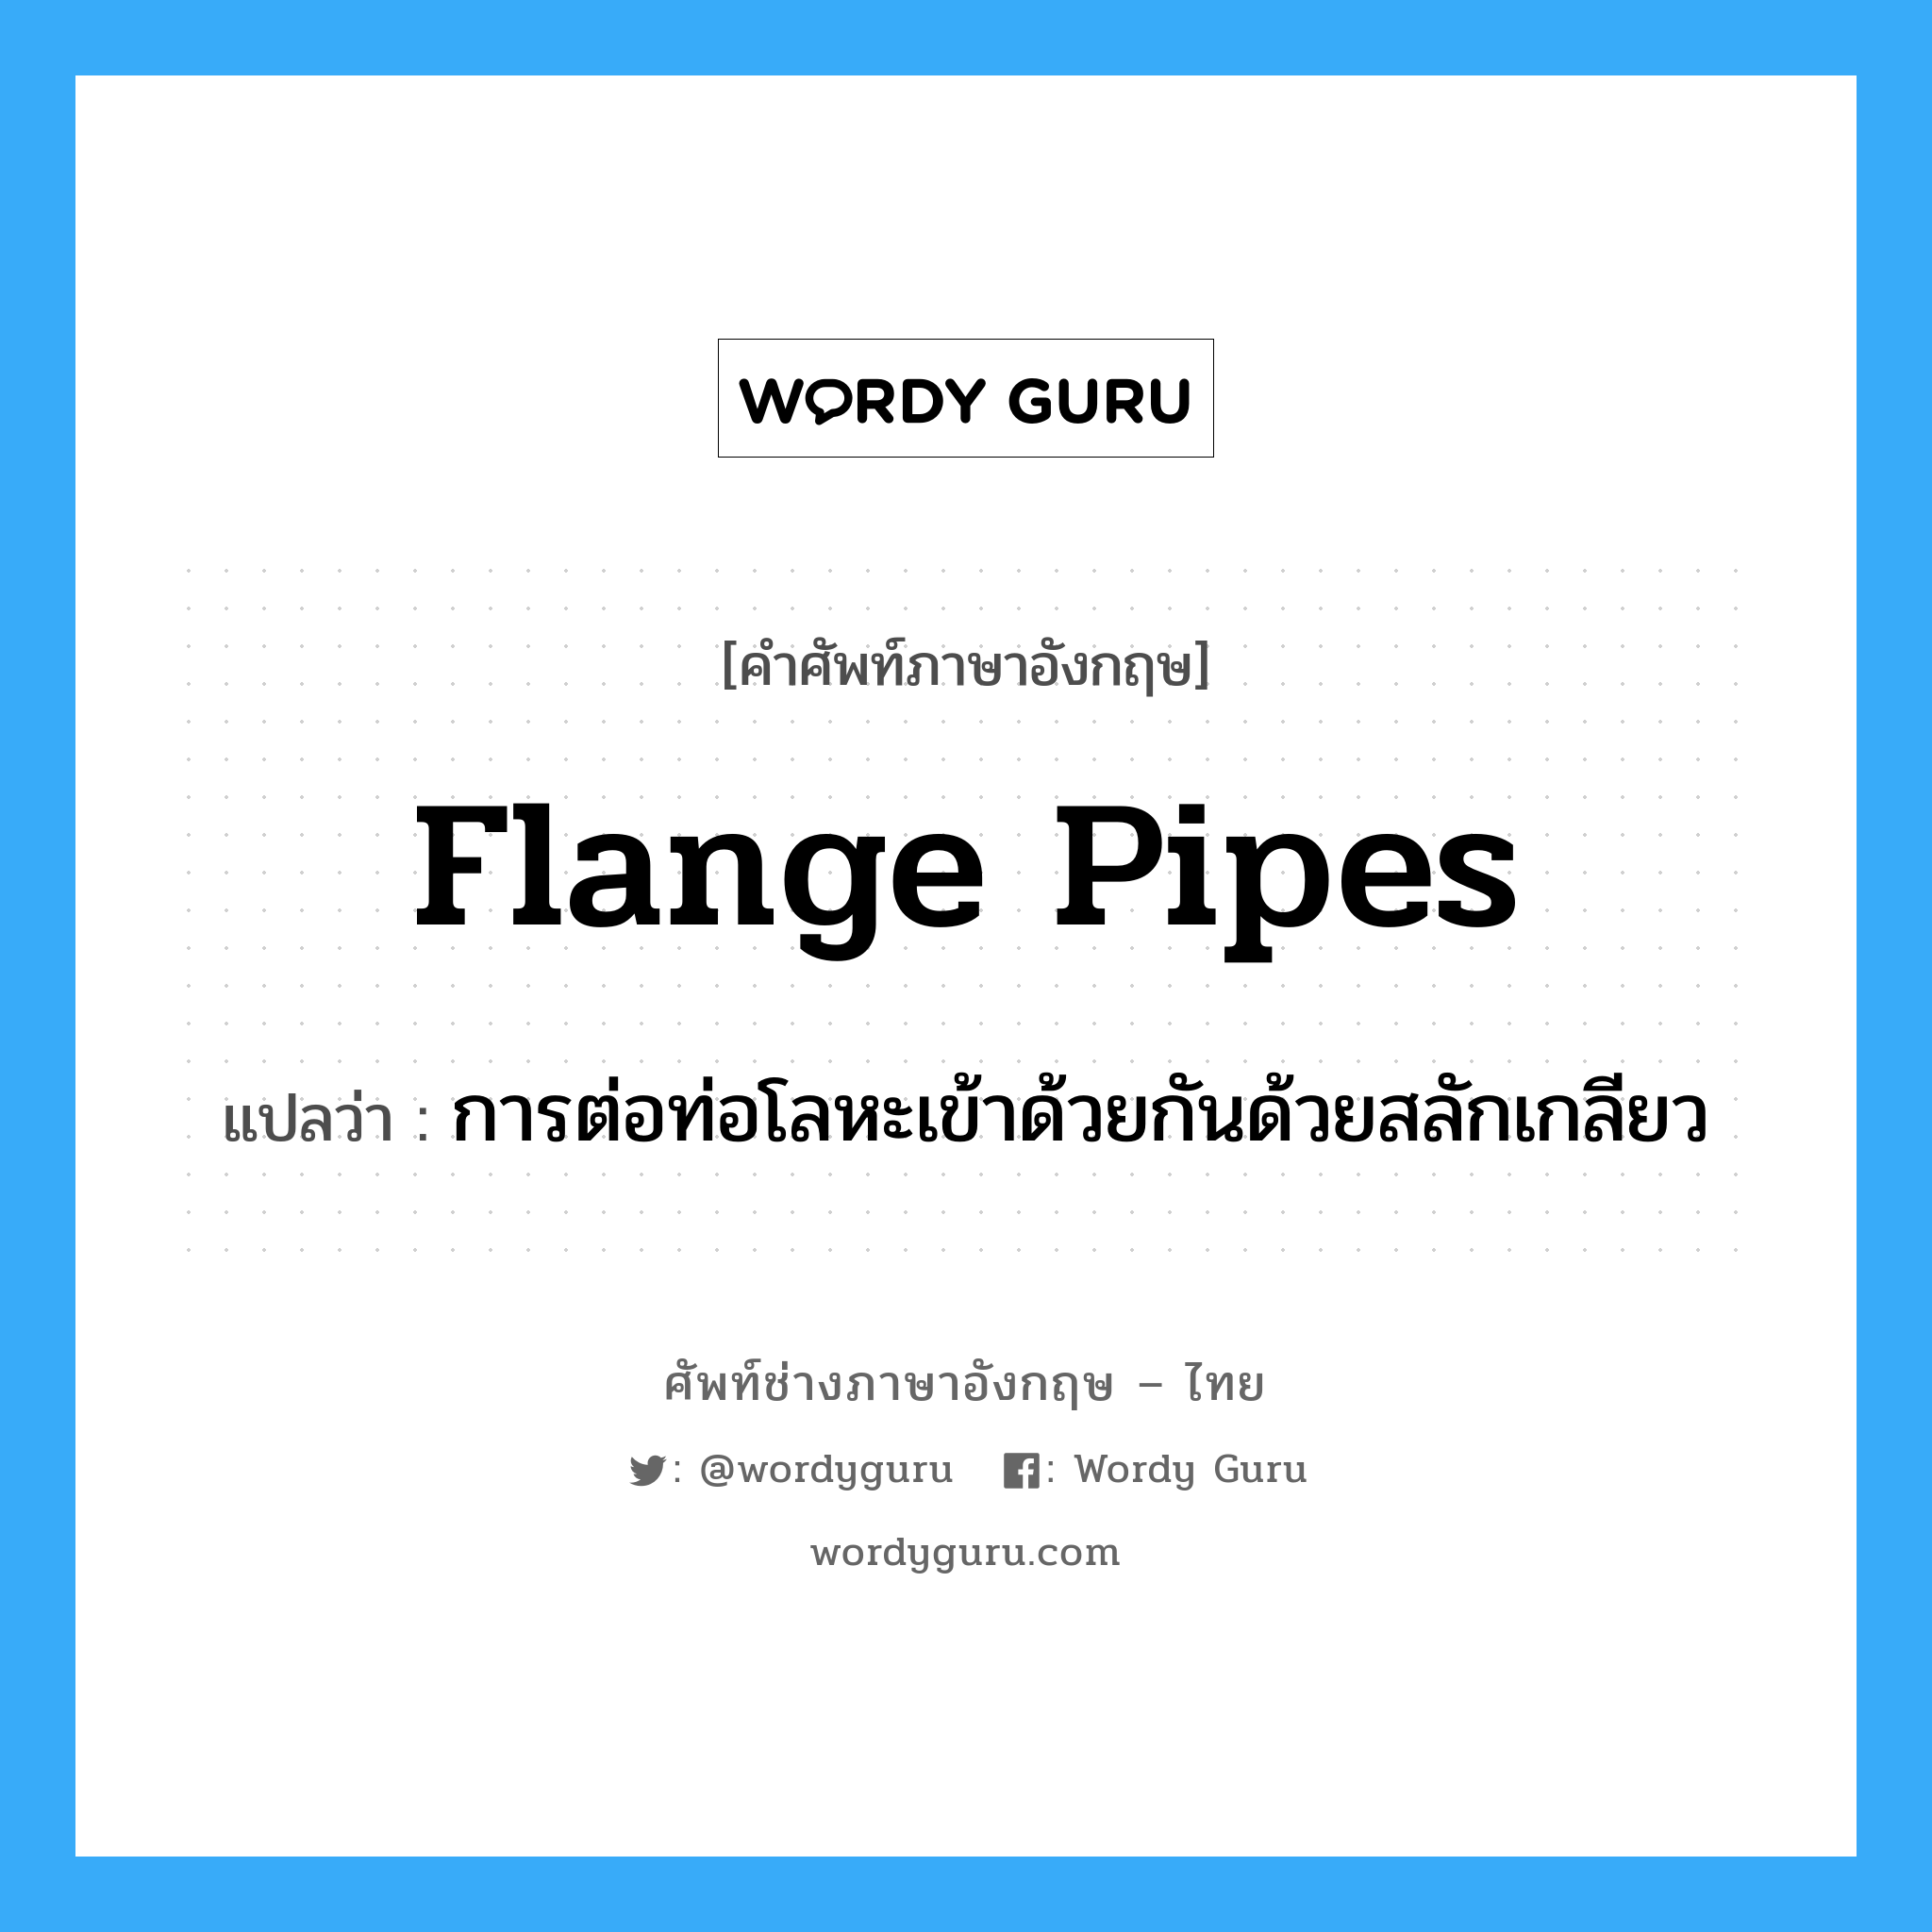 flange pipes แปลว่า?, คำศัพท์ช่างภาษาอังกฤษ - ไทย flange pipes คำศัพท์ภาษาอังกฤษ flange pipes แปลว่า การต่อท่อโลหะเข้าด้วยกันด้วยสลักเกลียว